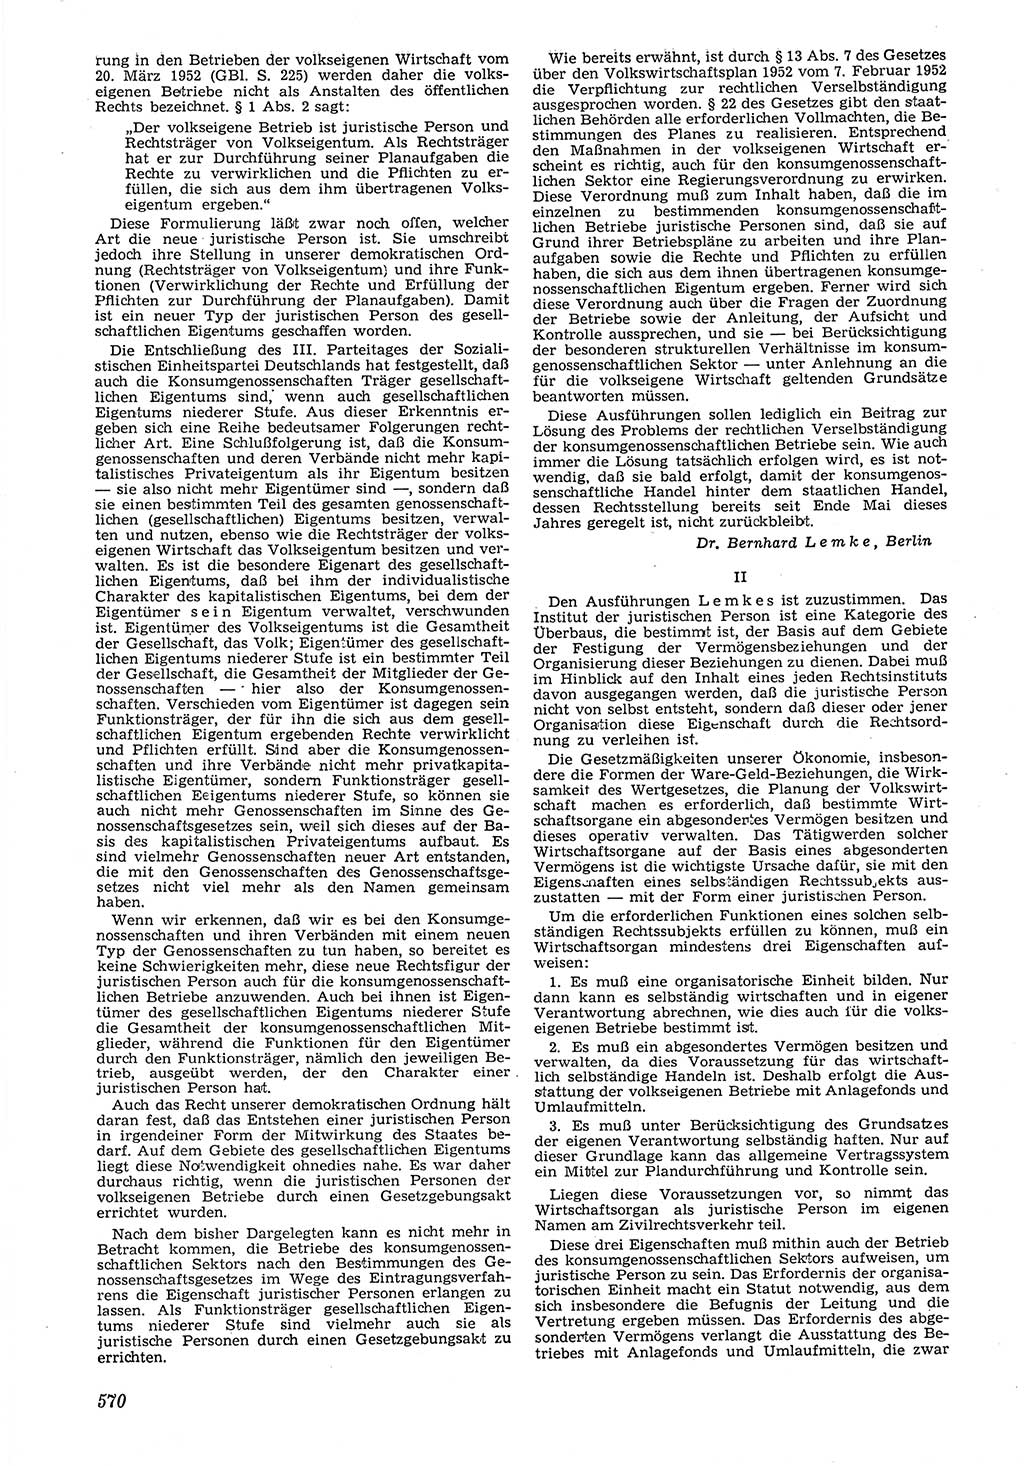 Neue Justiz (NJ), Zeitschrift für Recht und Rechtswissenschaft [Deutsche Demokratische Republik (DDR)], 6. Jahrgang 1952, Seite 570 (NJ DDR 1952, S. 570)